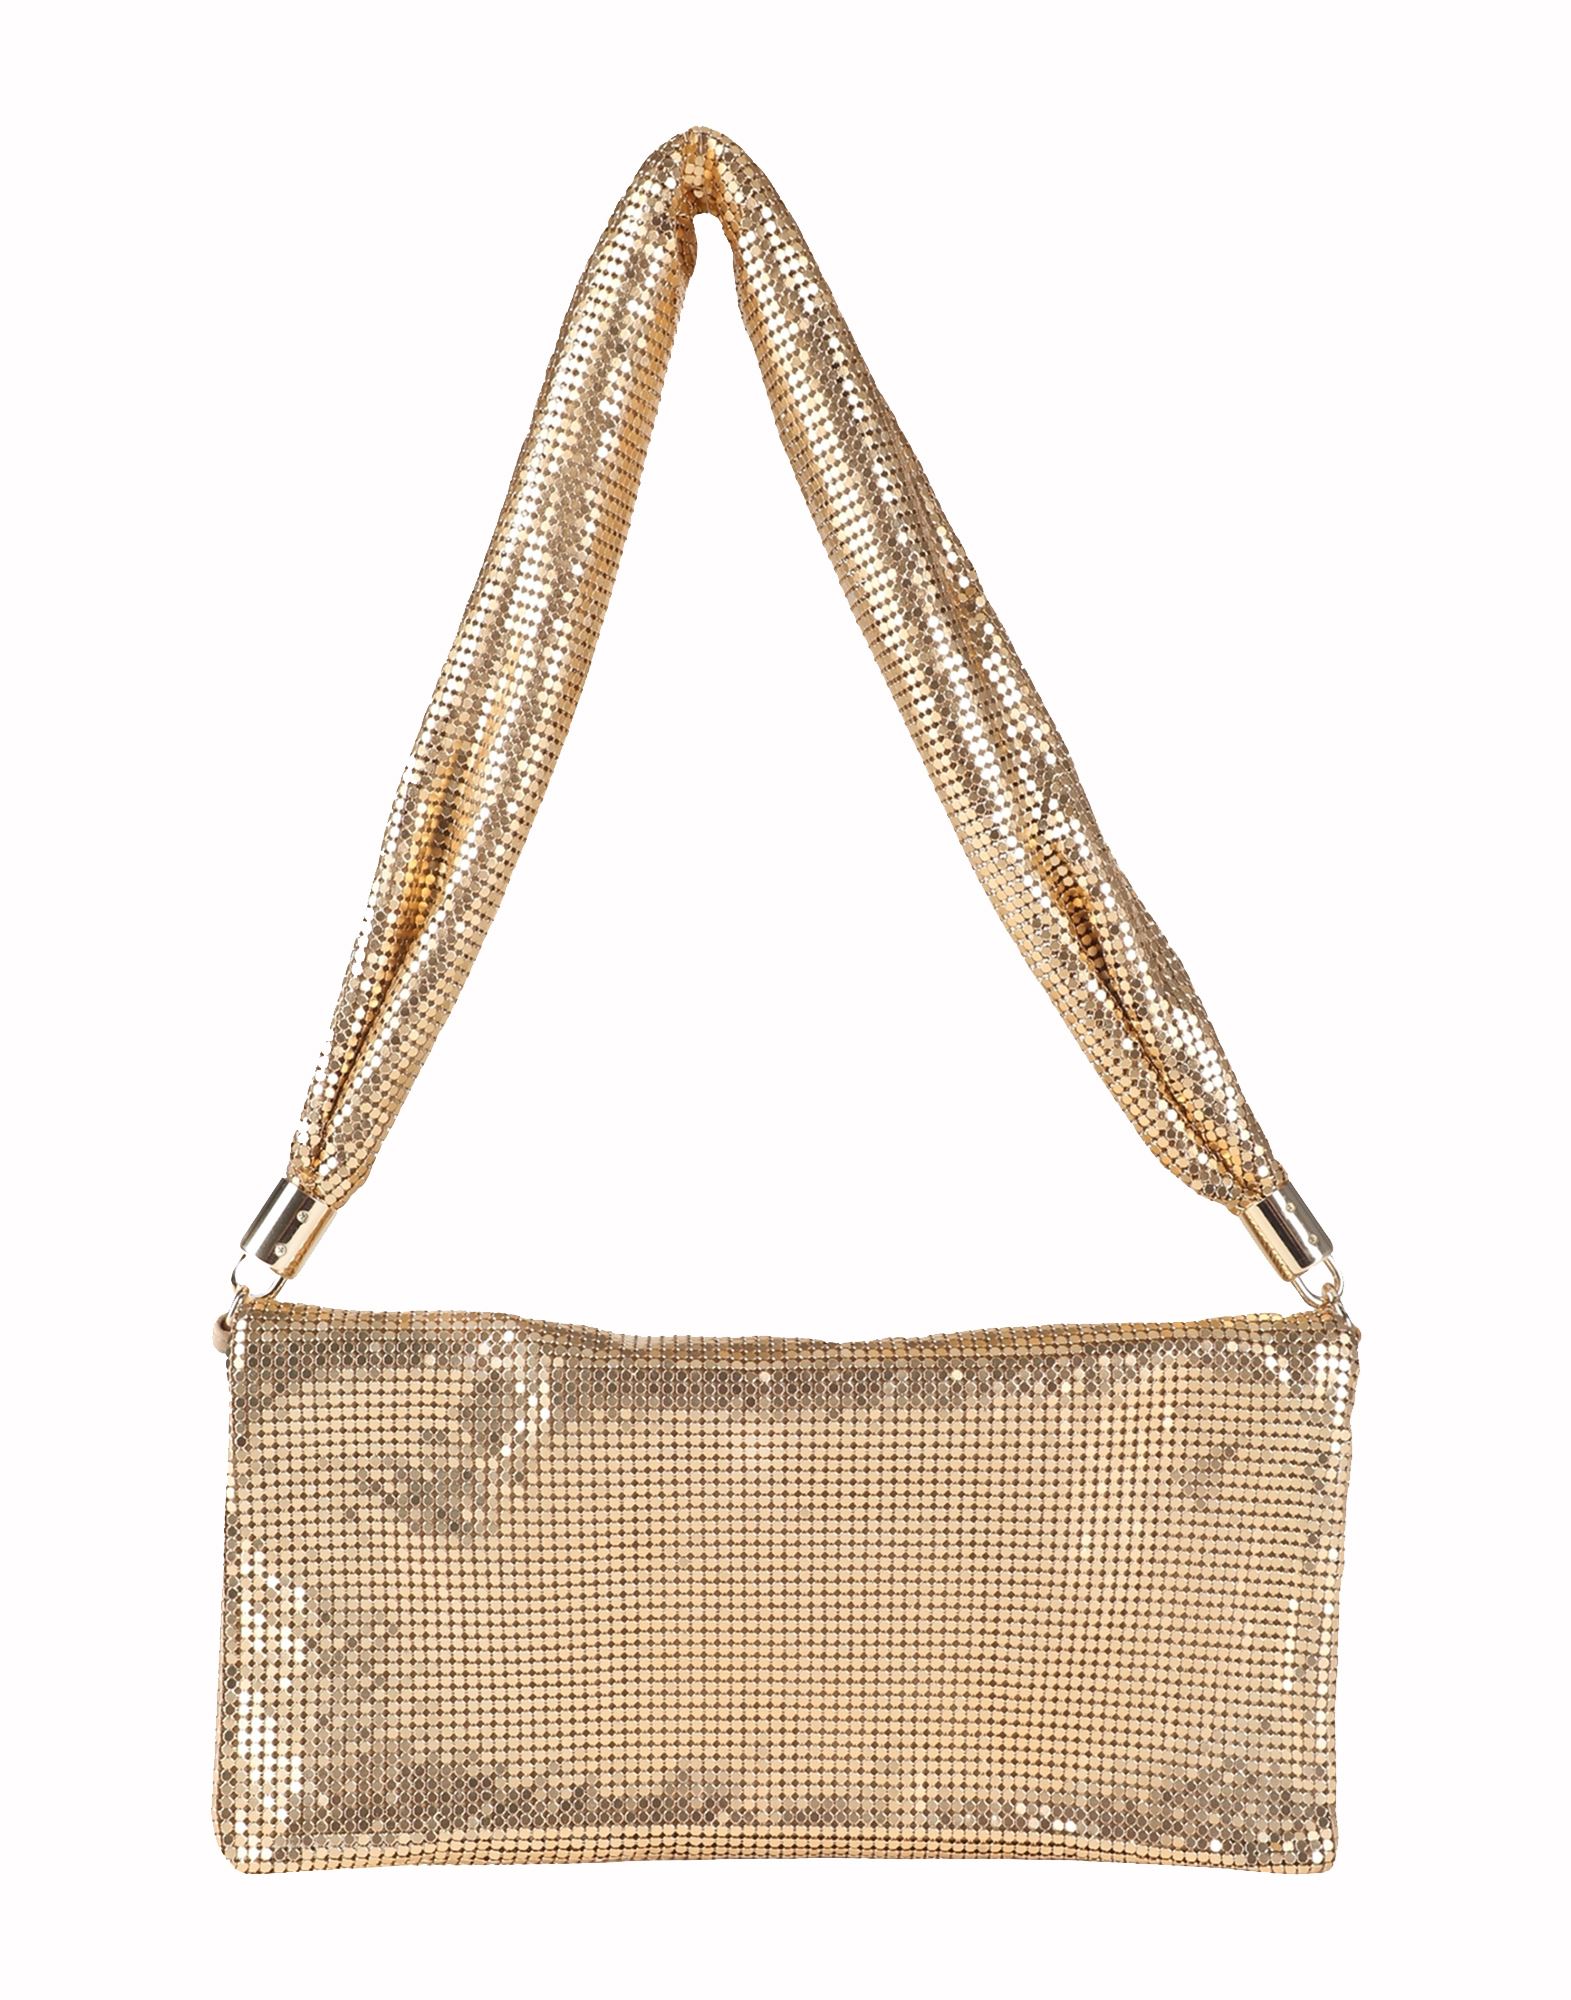 Arket Handbags In Gold